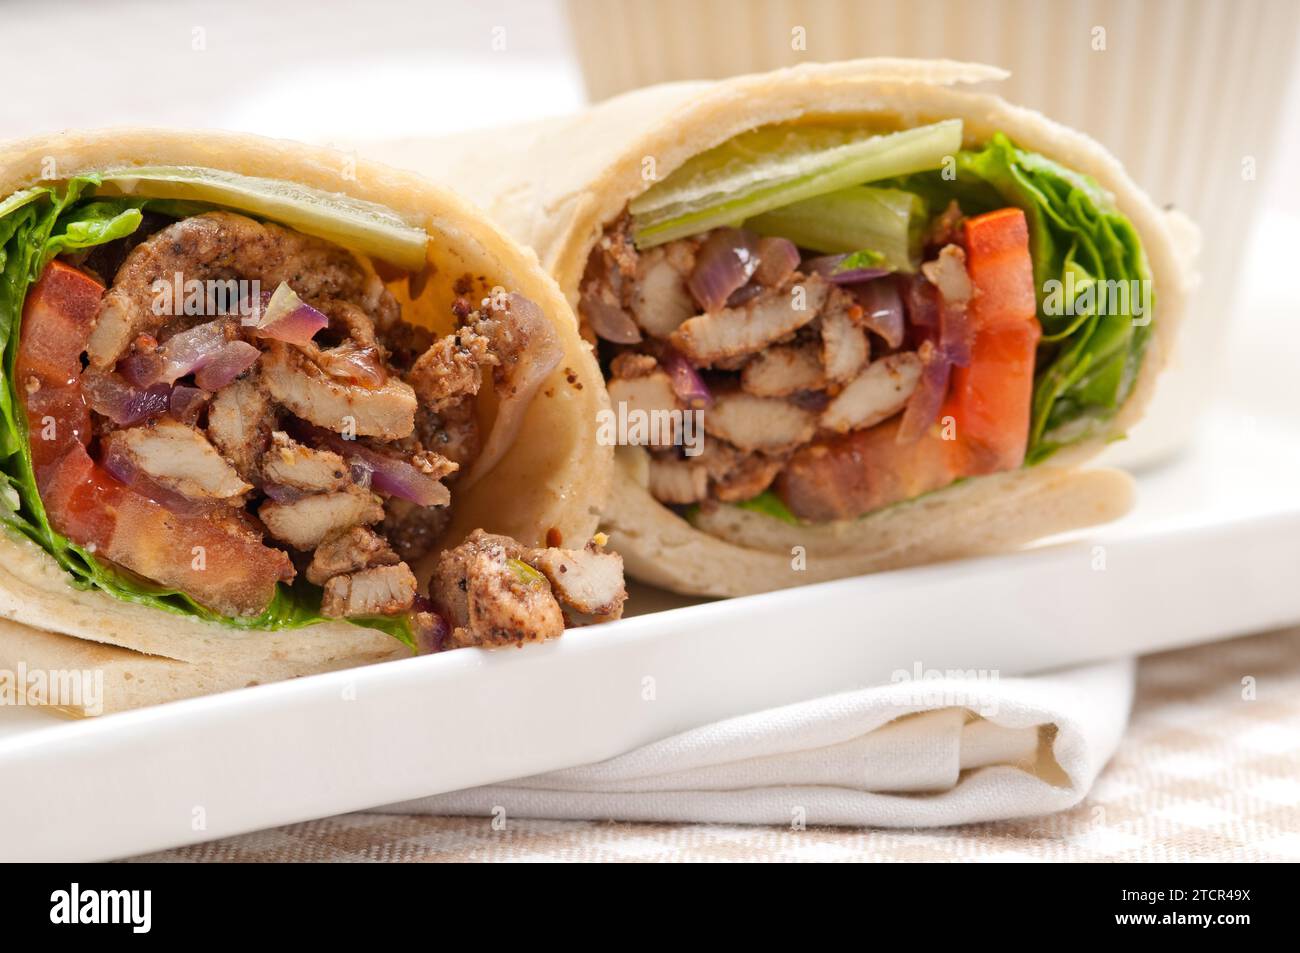 Kafta shawarma poulet pita wrap rouleau sandwich traditionnel arabe moyen-Orient Banque D'Images